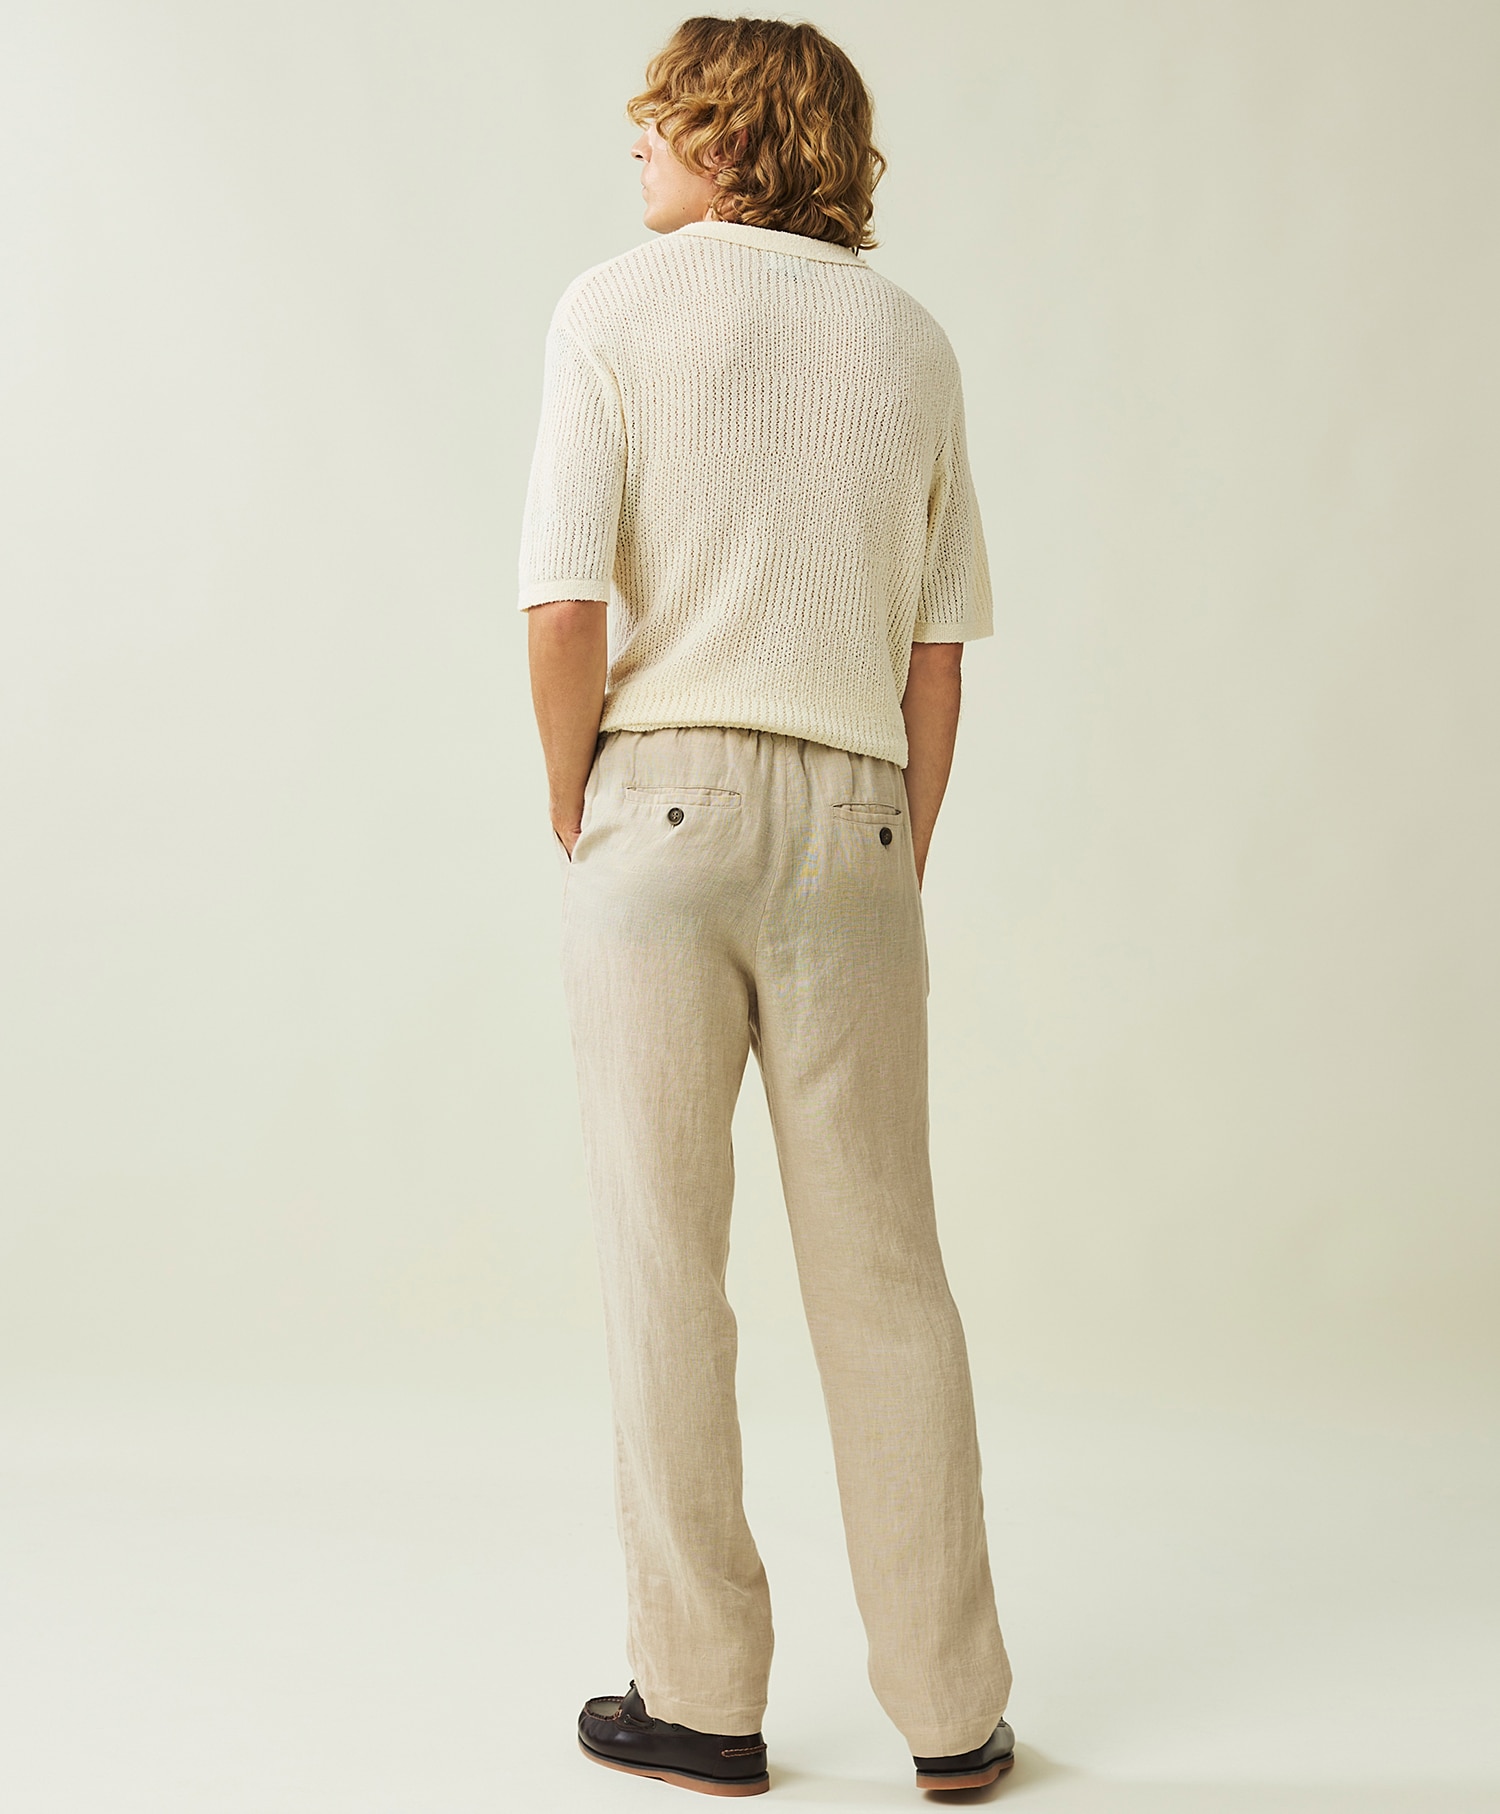 Lexington Linen Pants